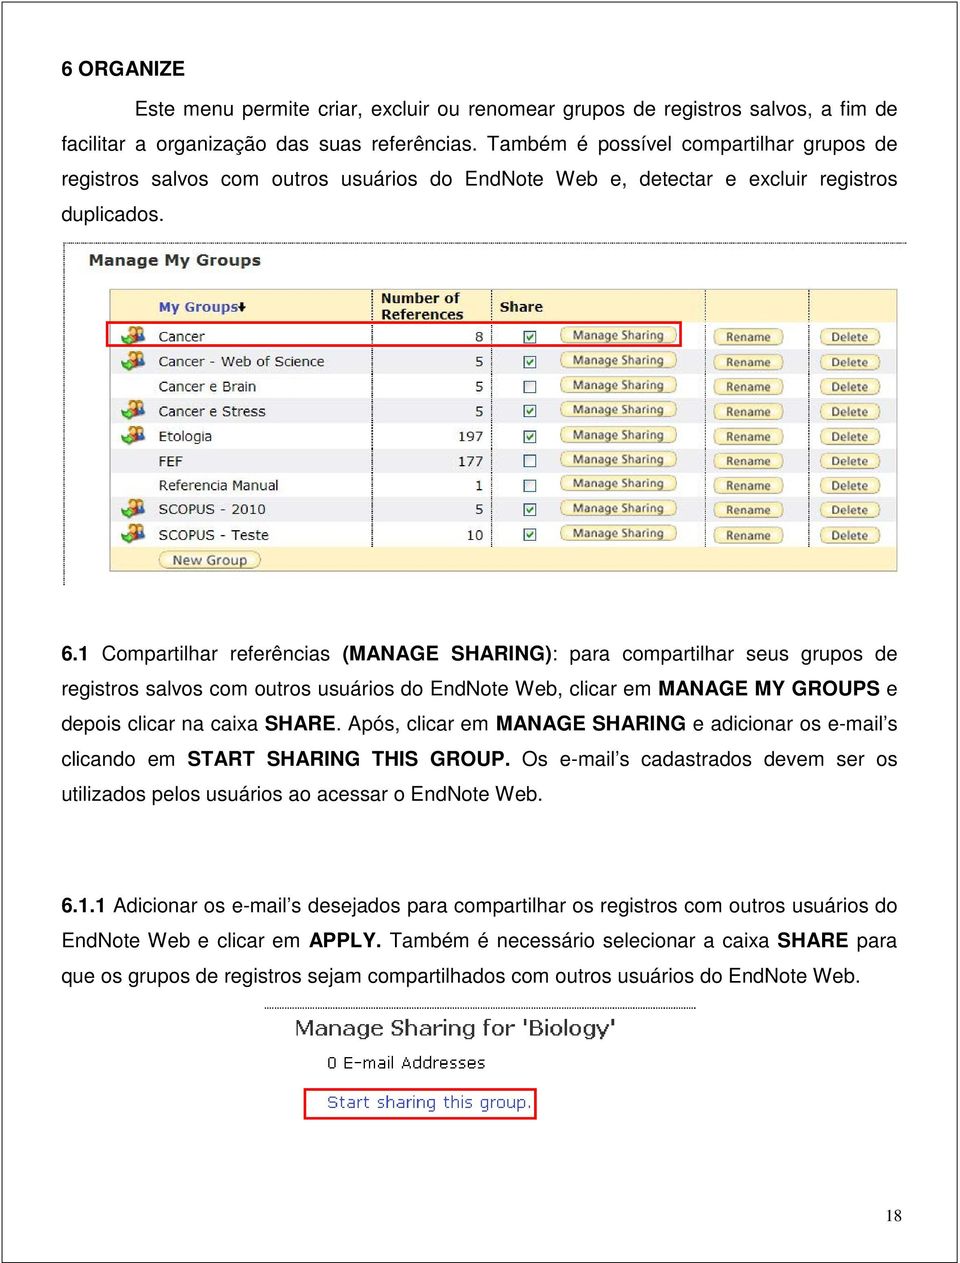 1 Compartilhar referências (MANAGE SHARING): para compartilhar seus grupos de registros salvos com outros usuários do EndNote Web, clicar em MANAGE MY GROUPS e depois clicar na caixa SHARE.